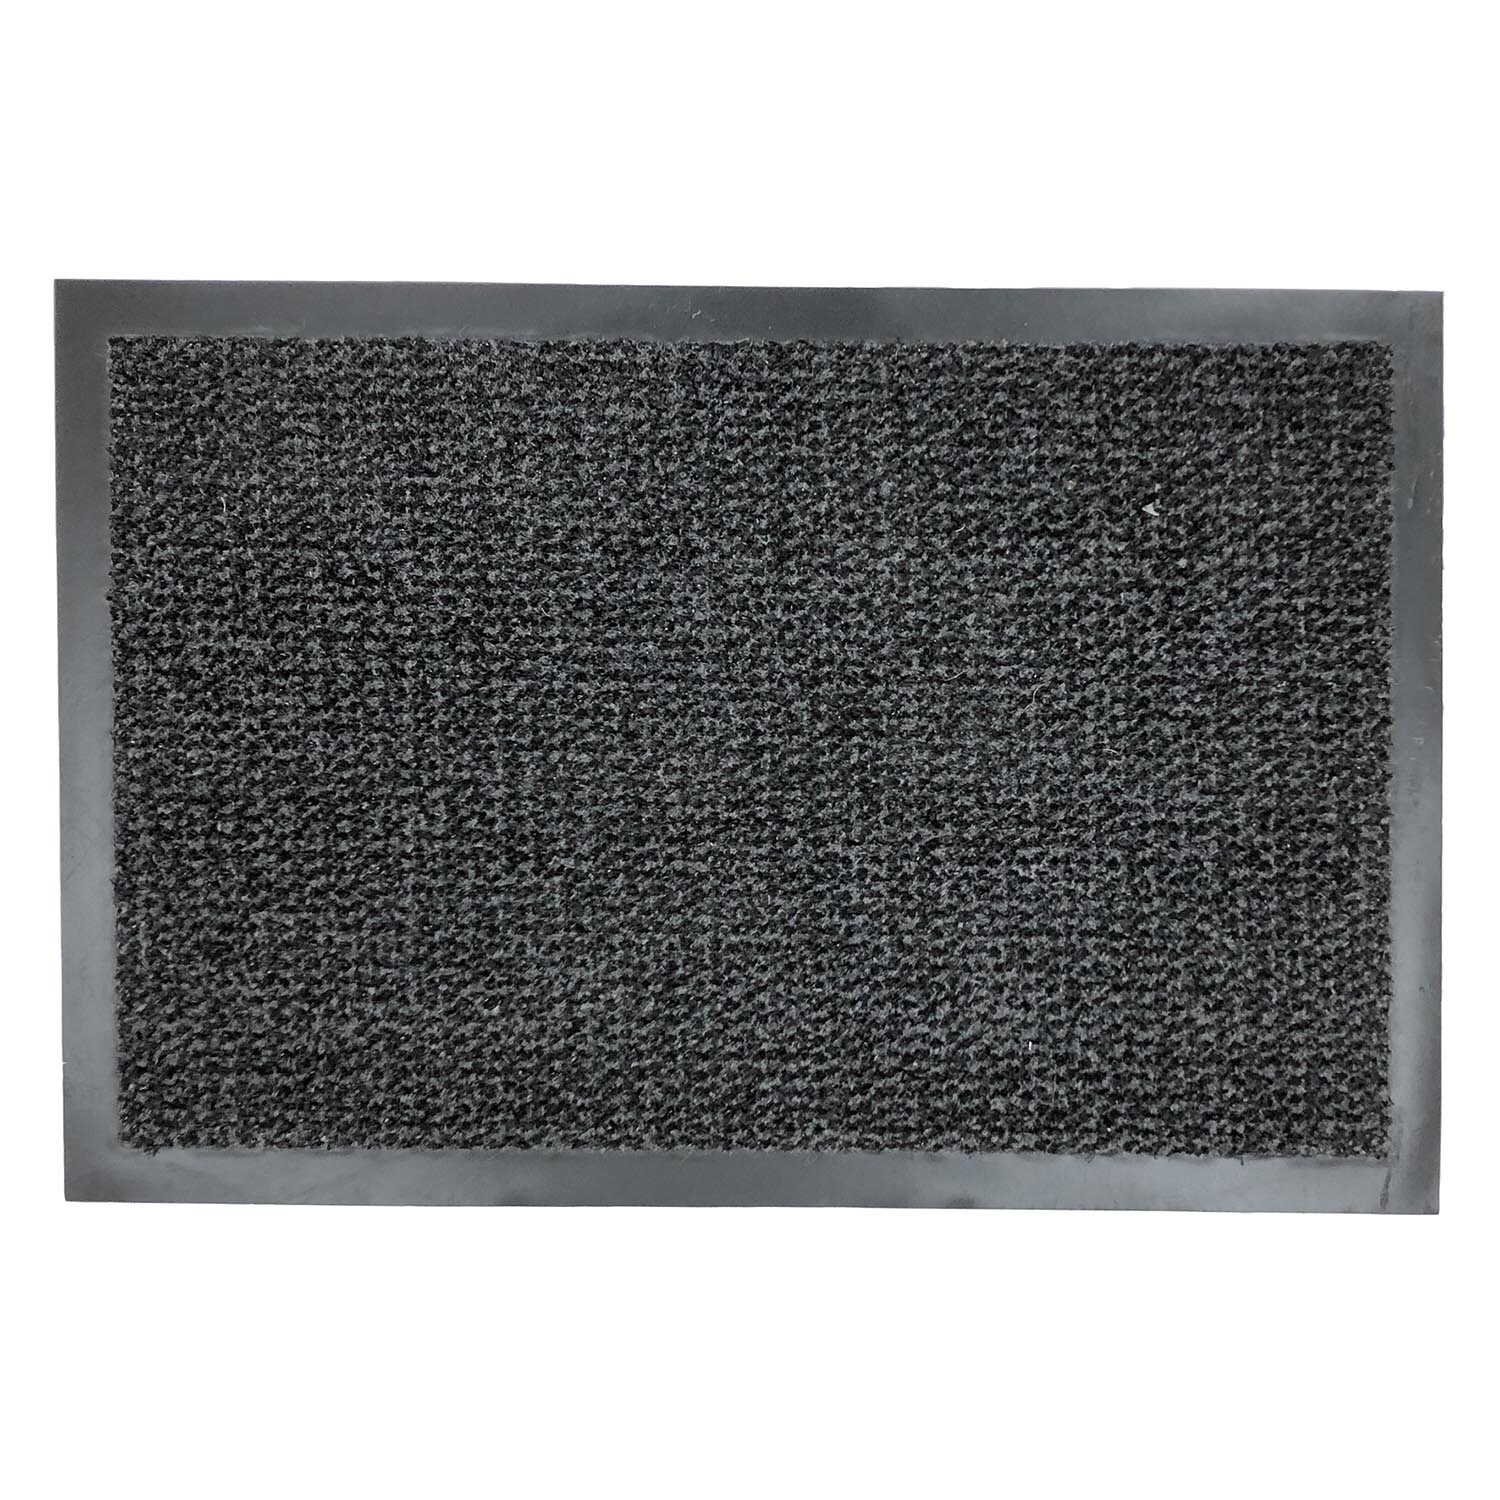 Black Scraper Barrier Doormat 45 x 75cm Image